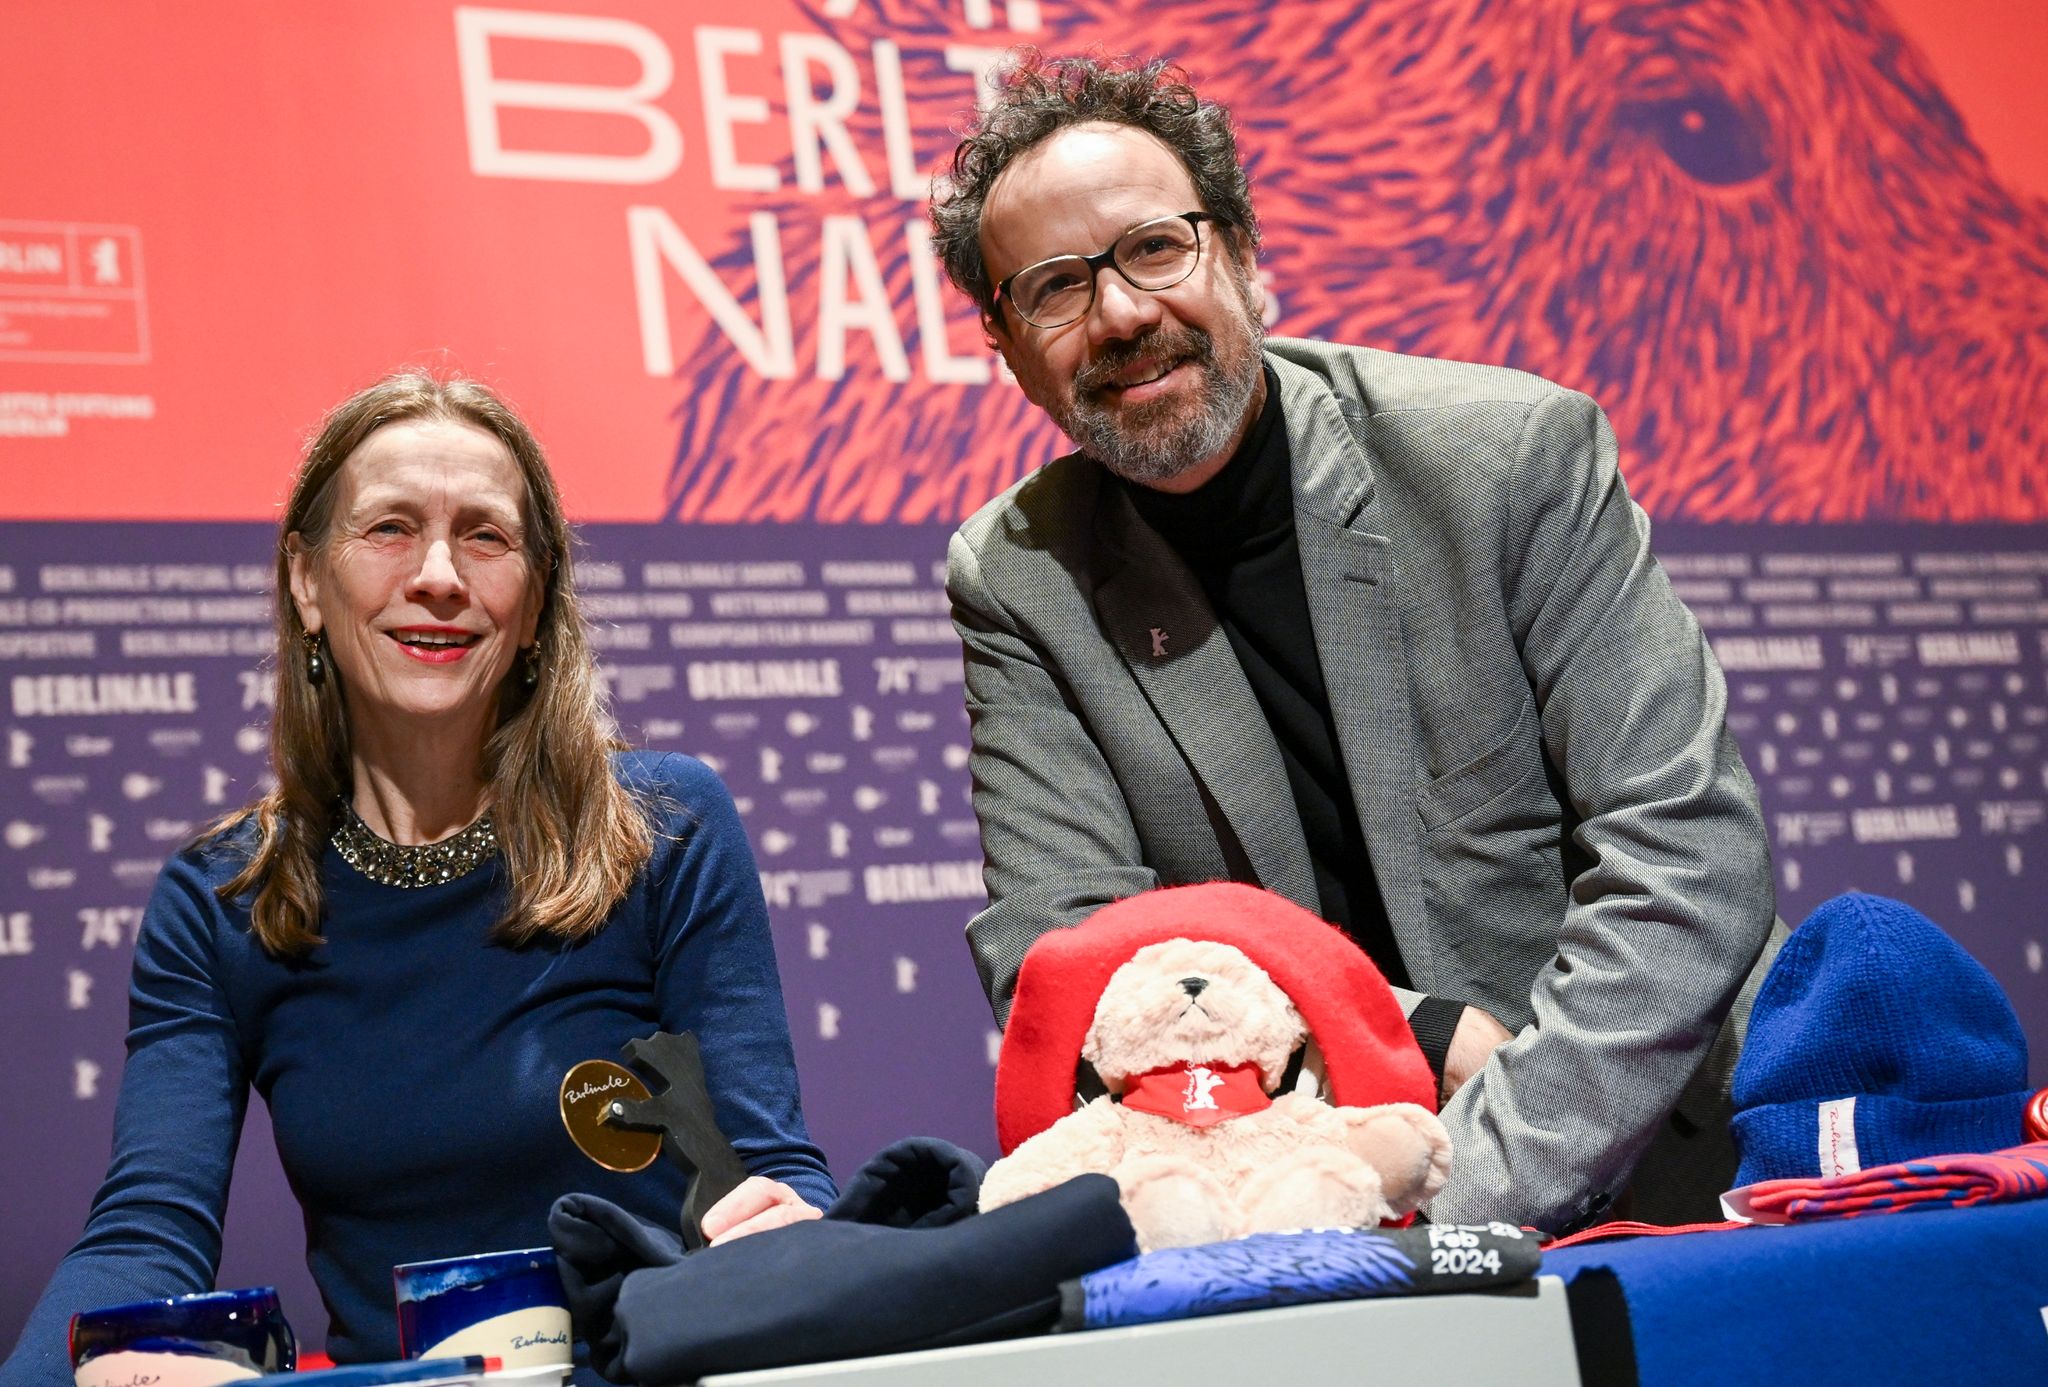 Mariette Rissenbeek und Carlo Chatrian stellen das Berlinale-Programm vor.